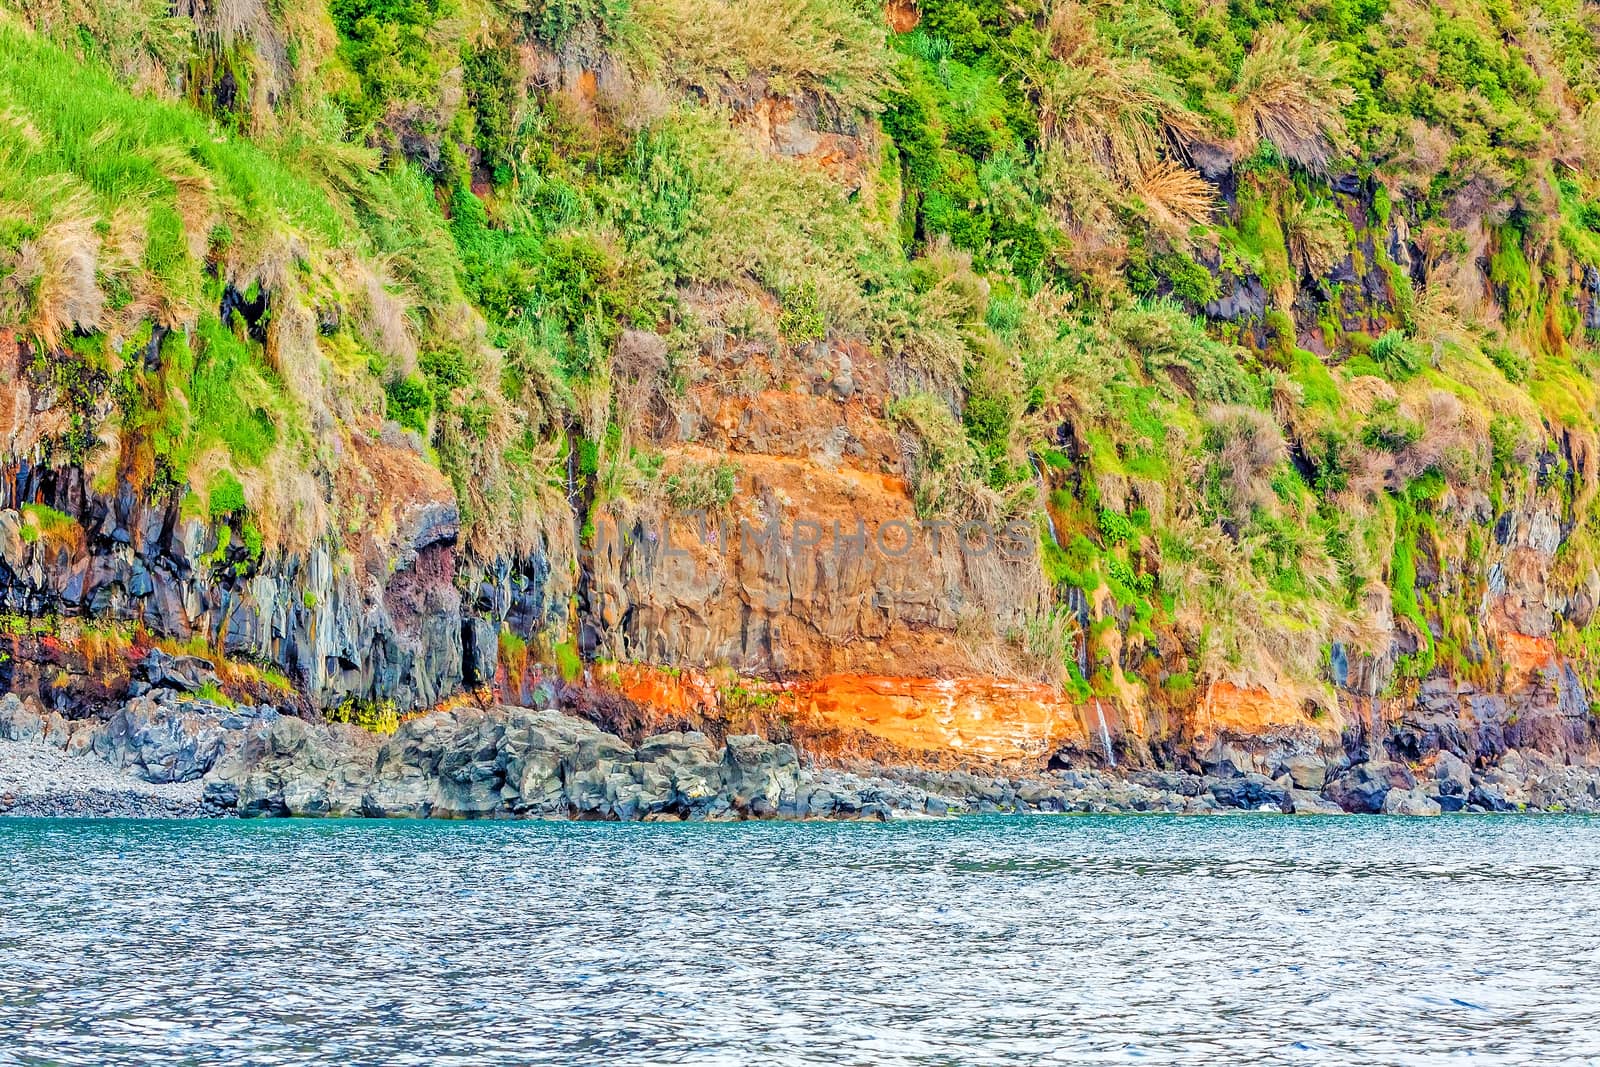 Colorful rocky cliff coast of Madeira by aldorado